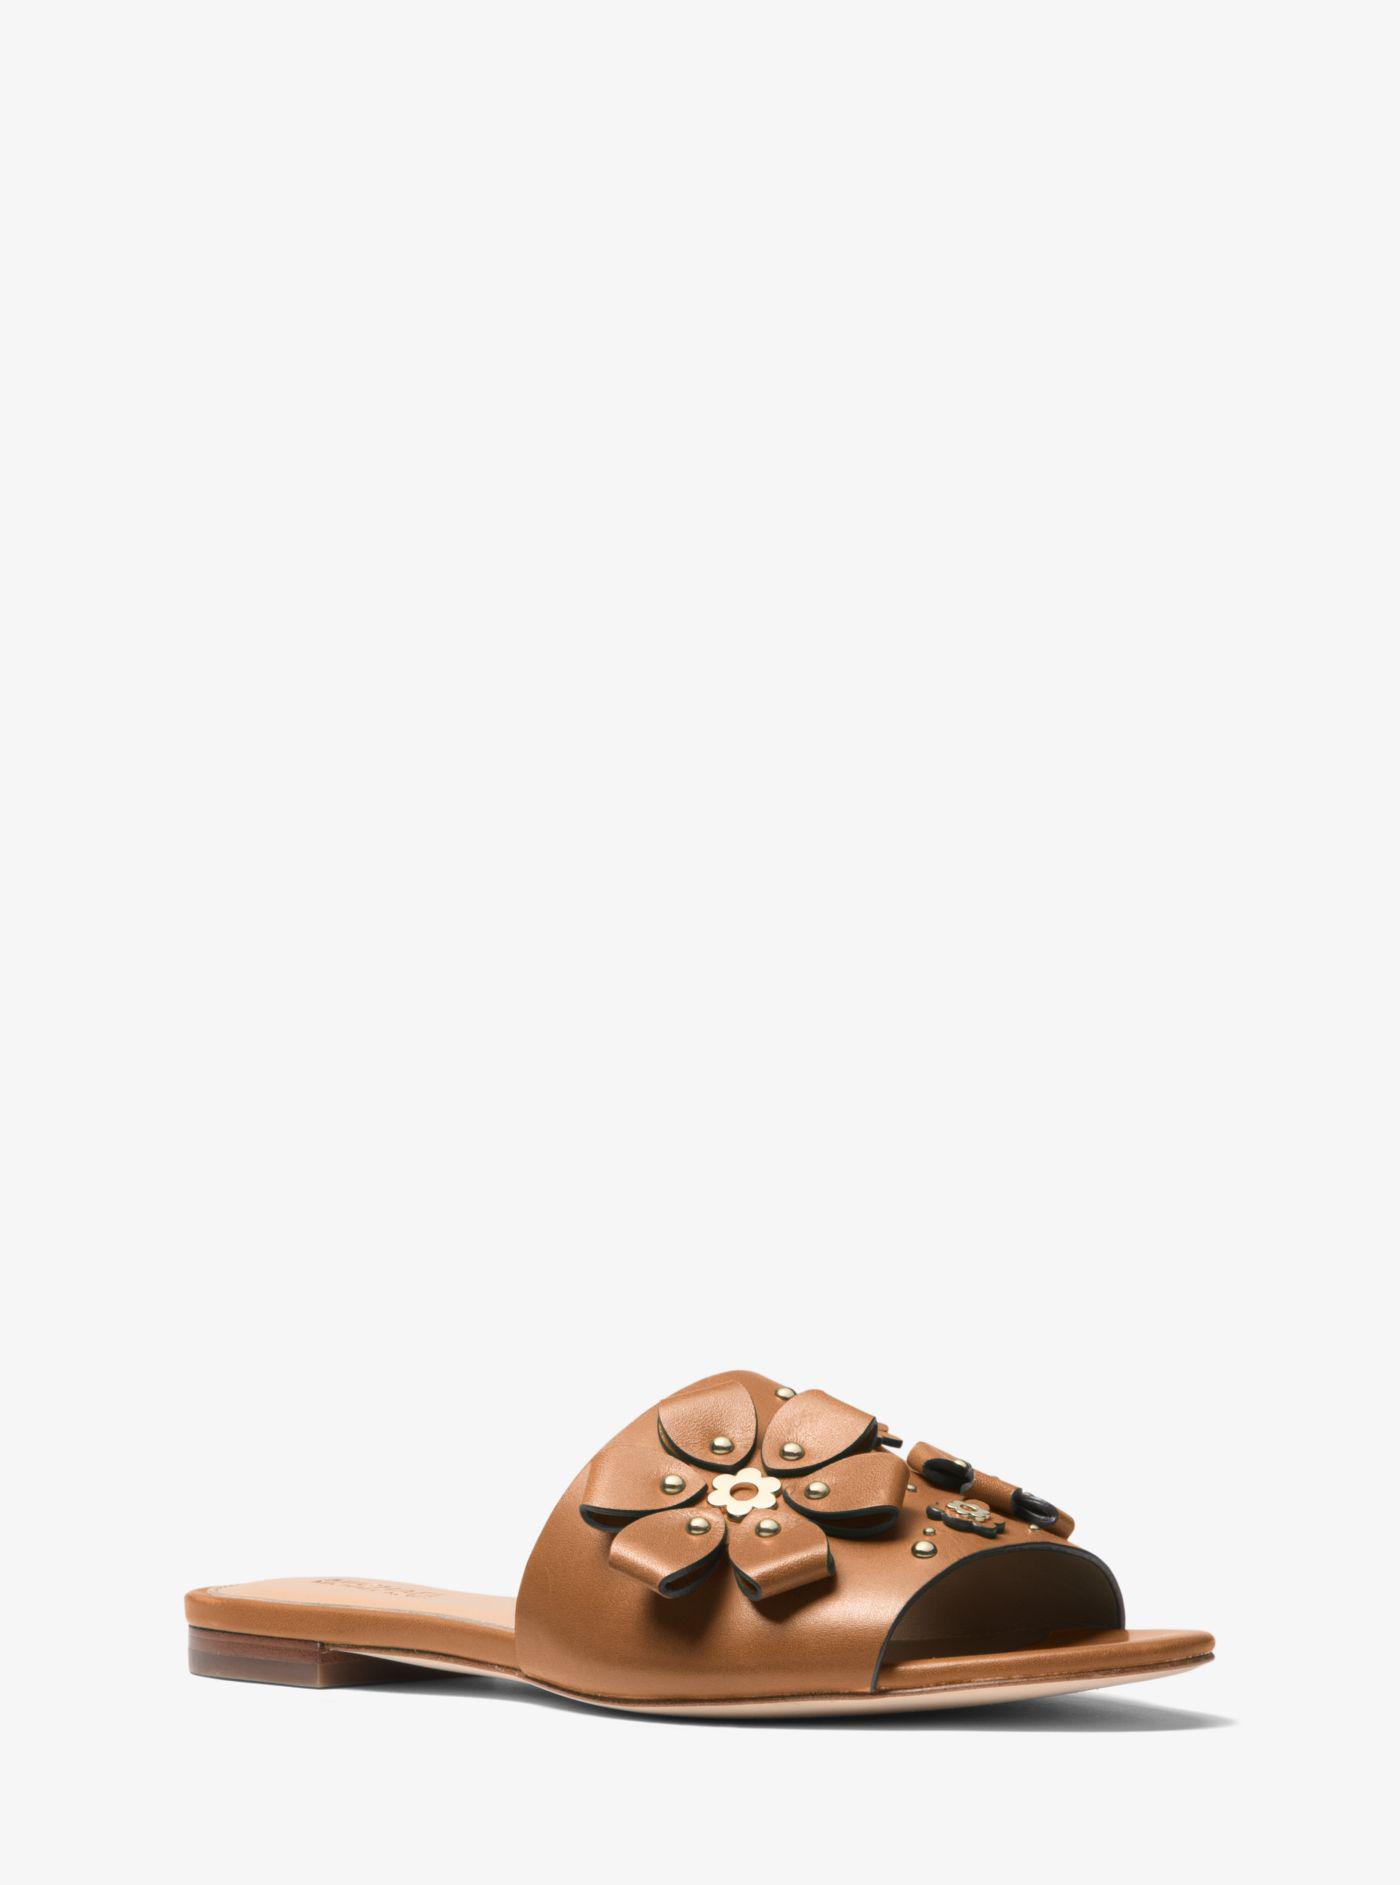 michael kors tara floral embellished leather platform sandal